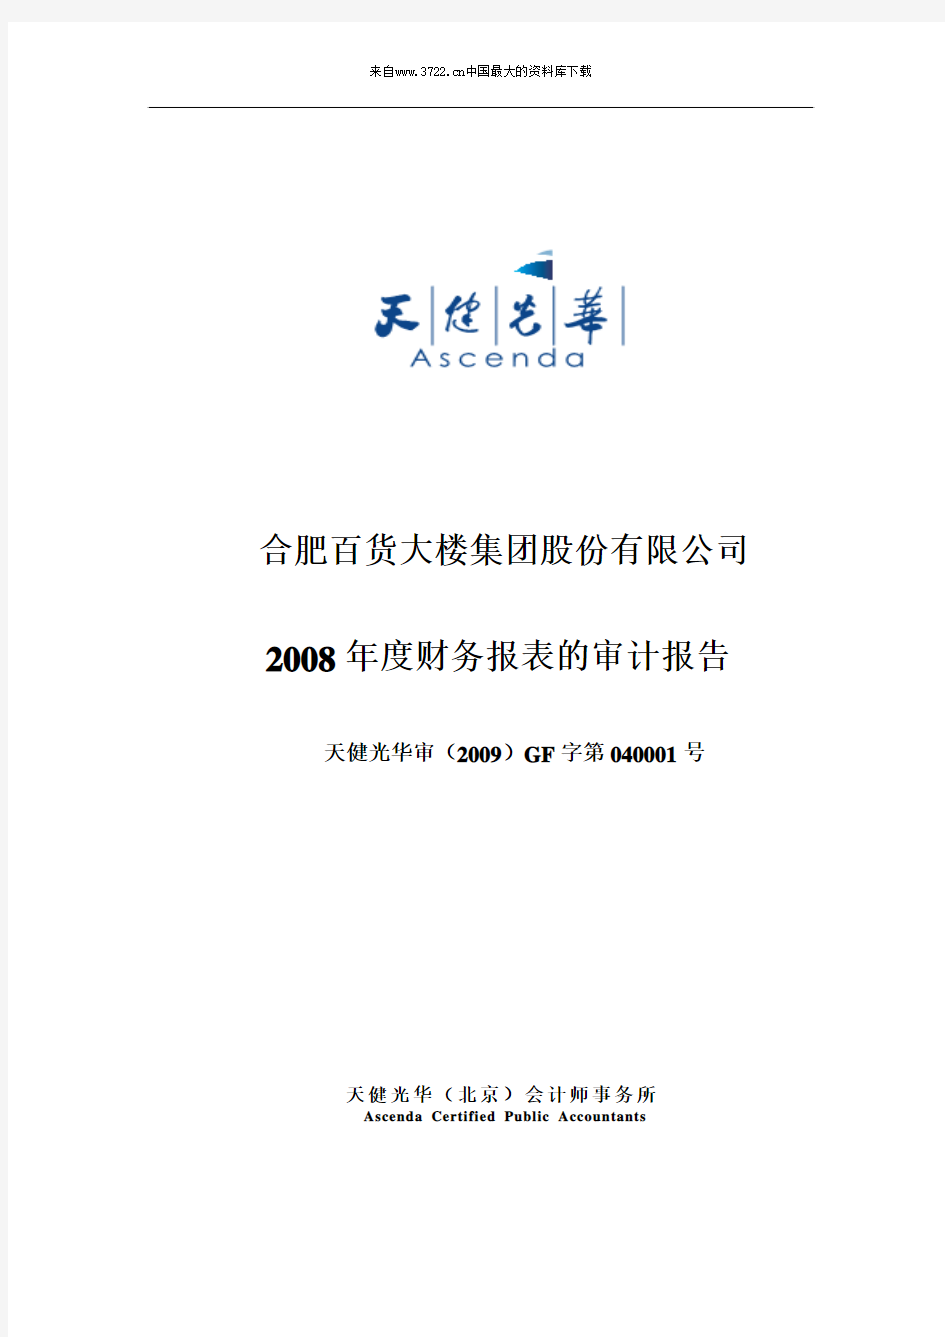 合肥百货大楼集团股份有限公司2008年度财务报表的审计报告(pdf 60页)